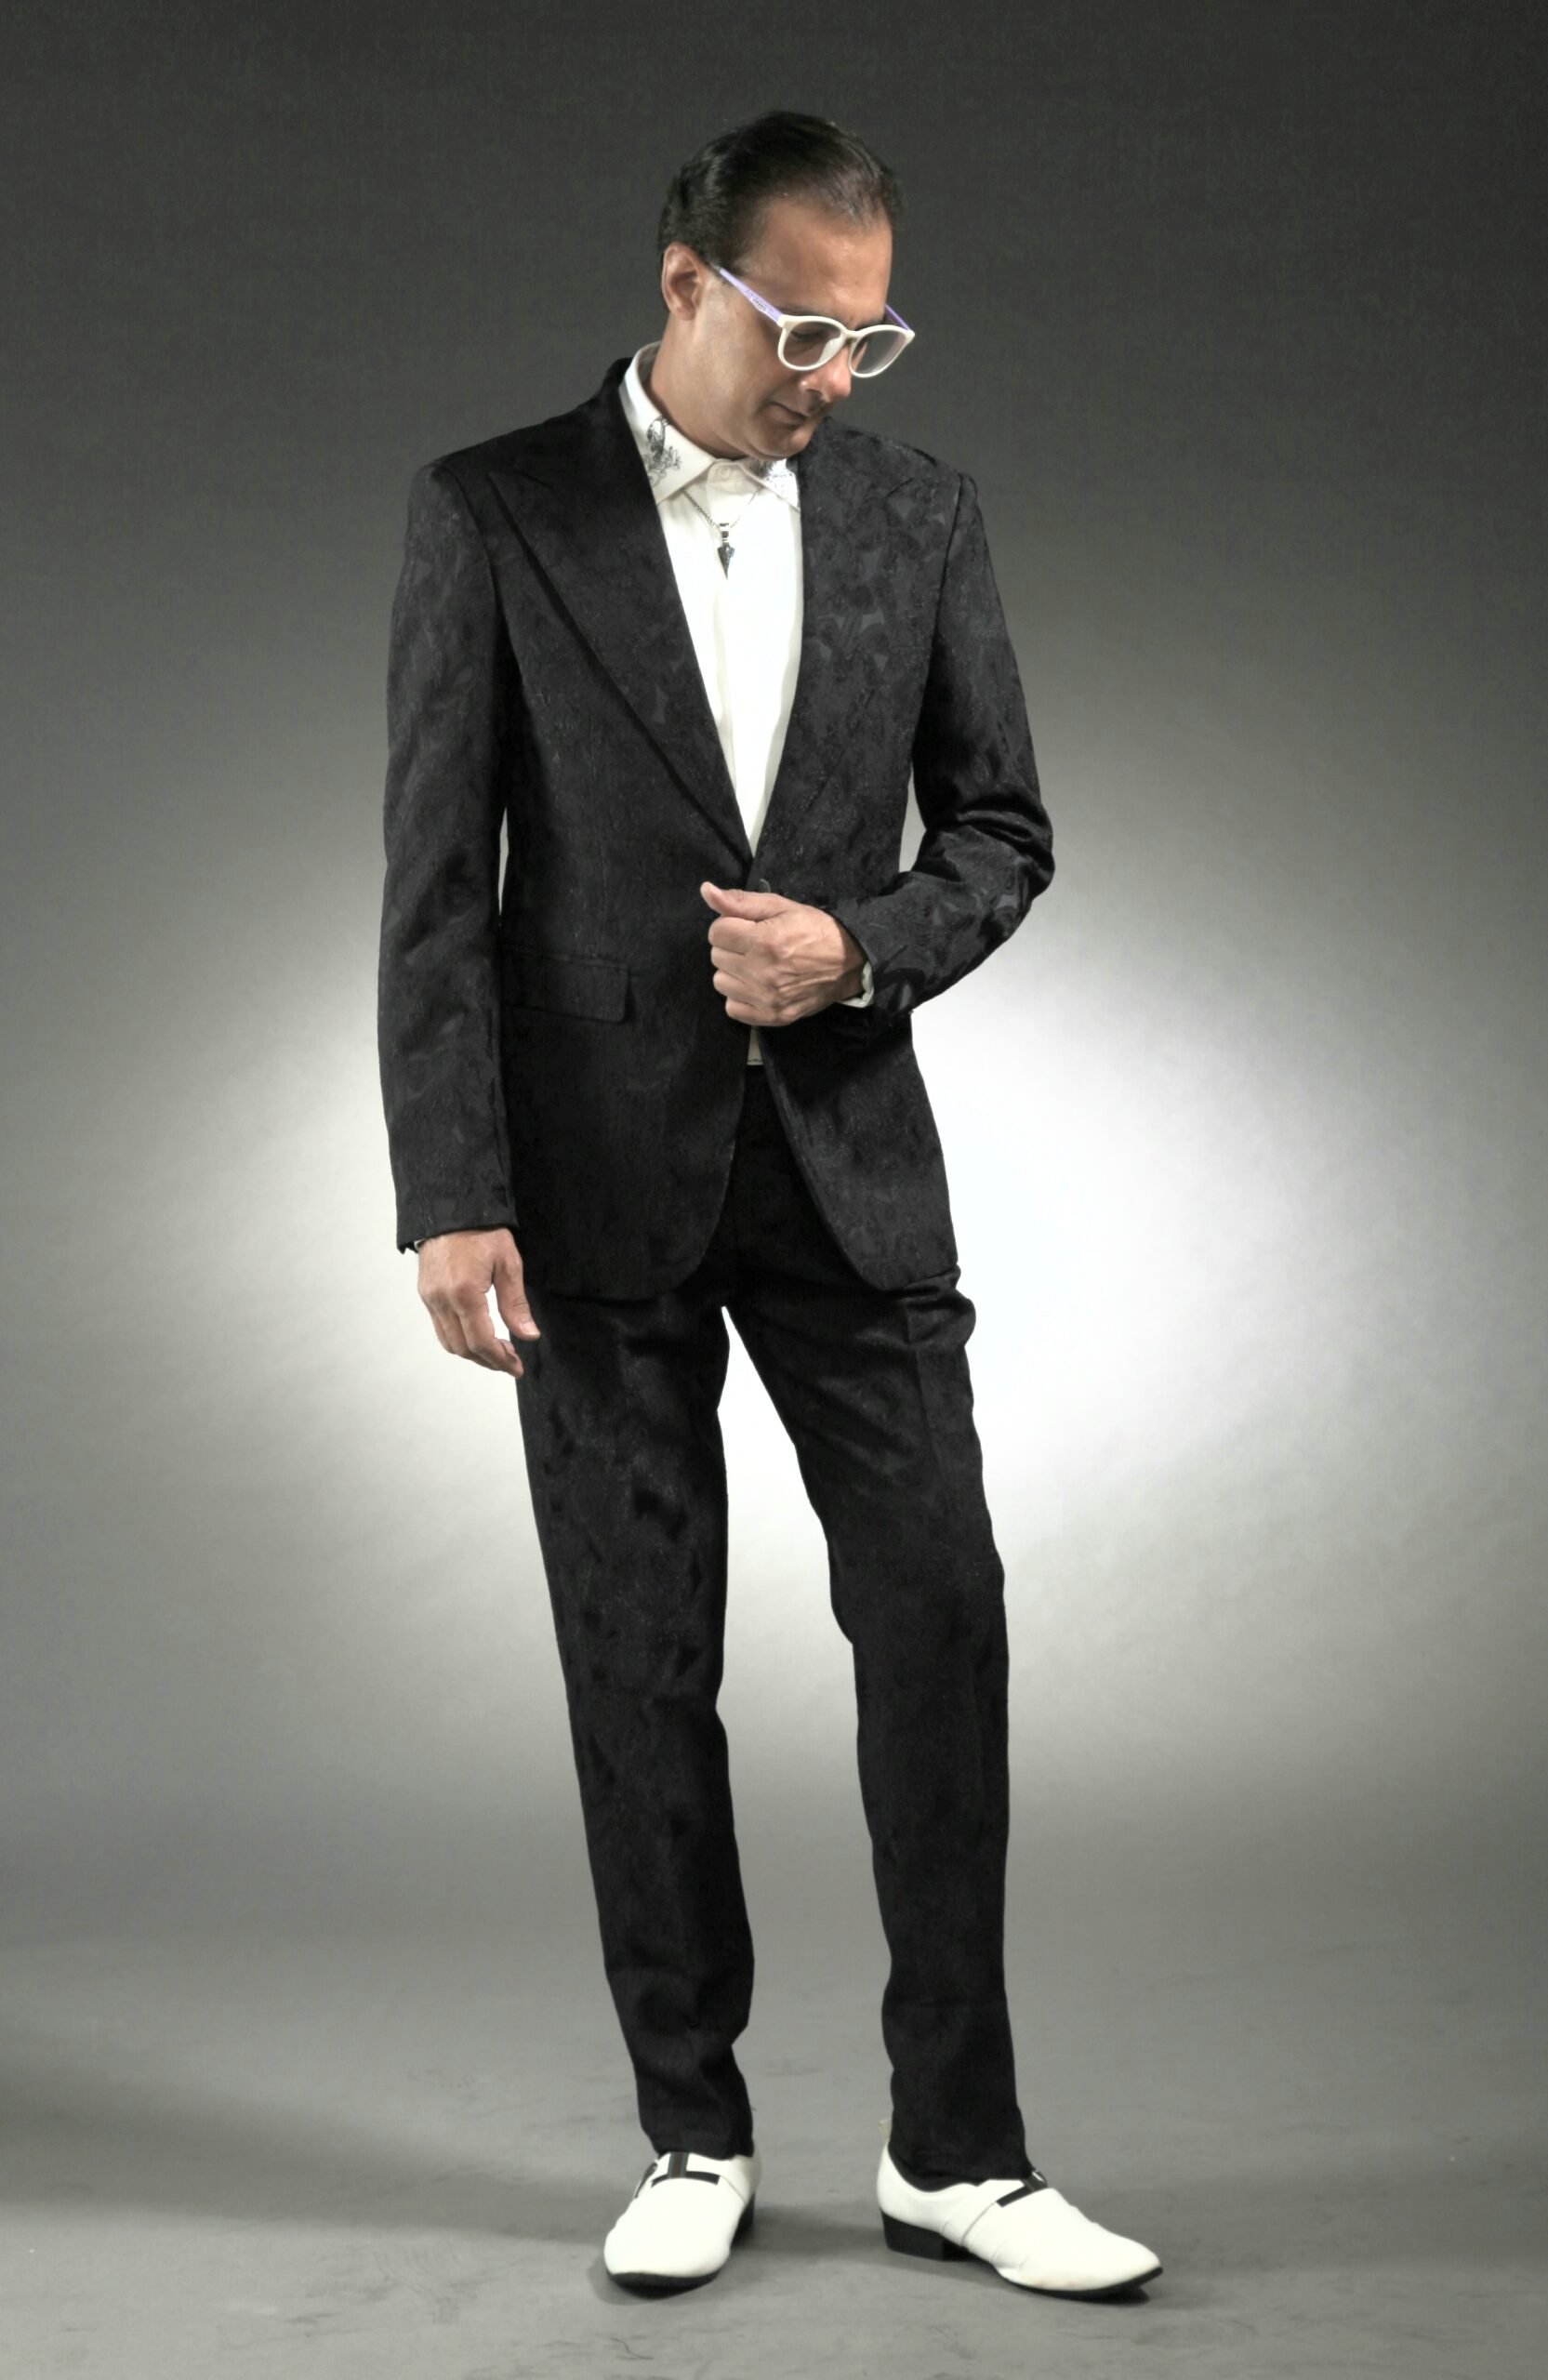 MST-5030-01-rent_rental_hire_tuxedo_suit_black_tie_suit_designer_suits_shop_tailor_tailors_singapore_wedding